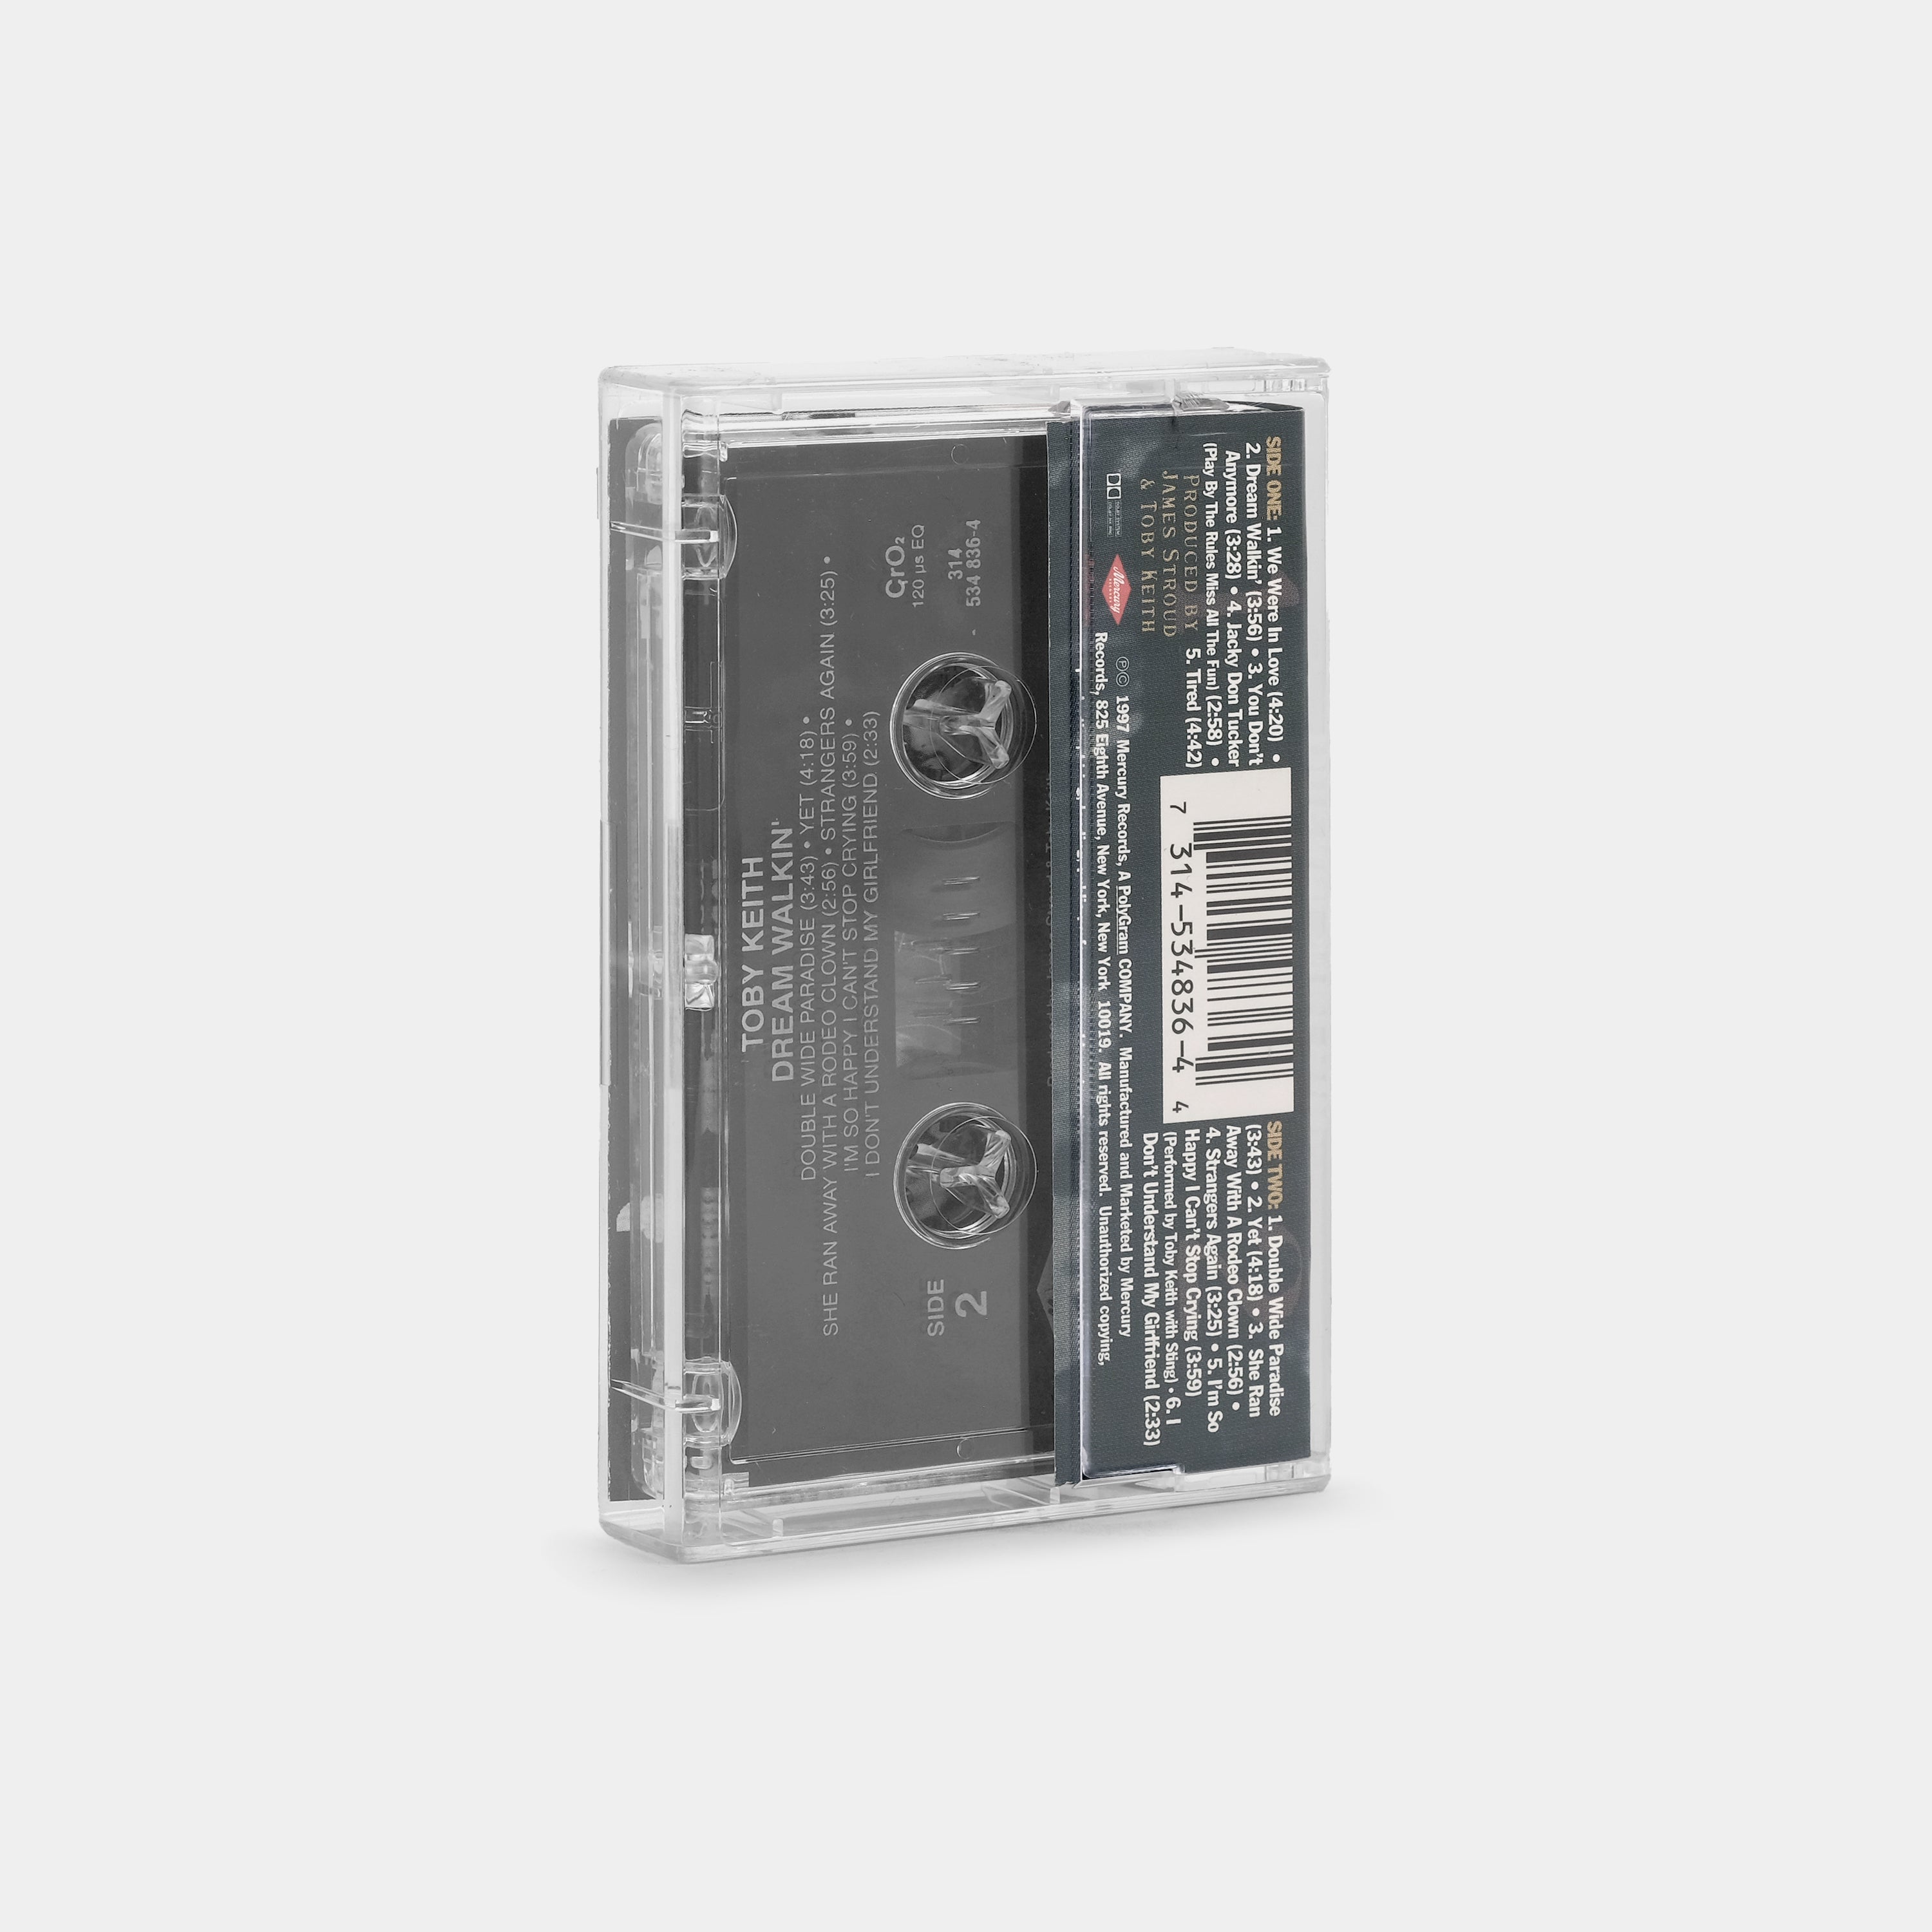 Toby Keith - Dream Walkin' Cassette Tape